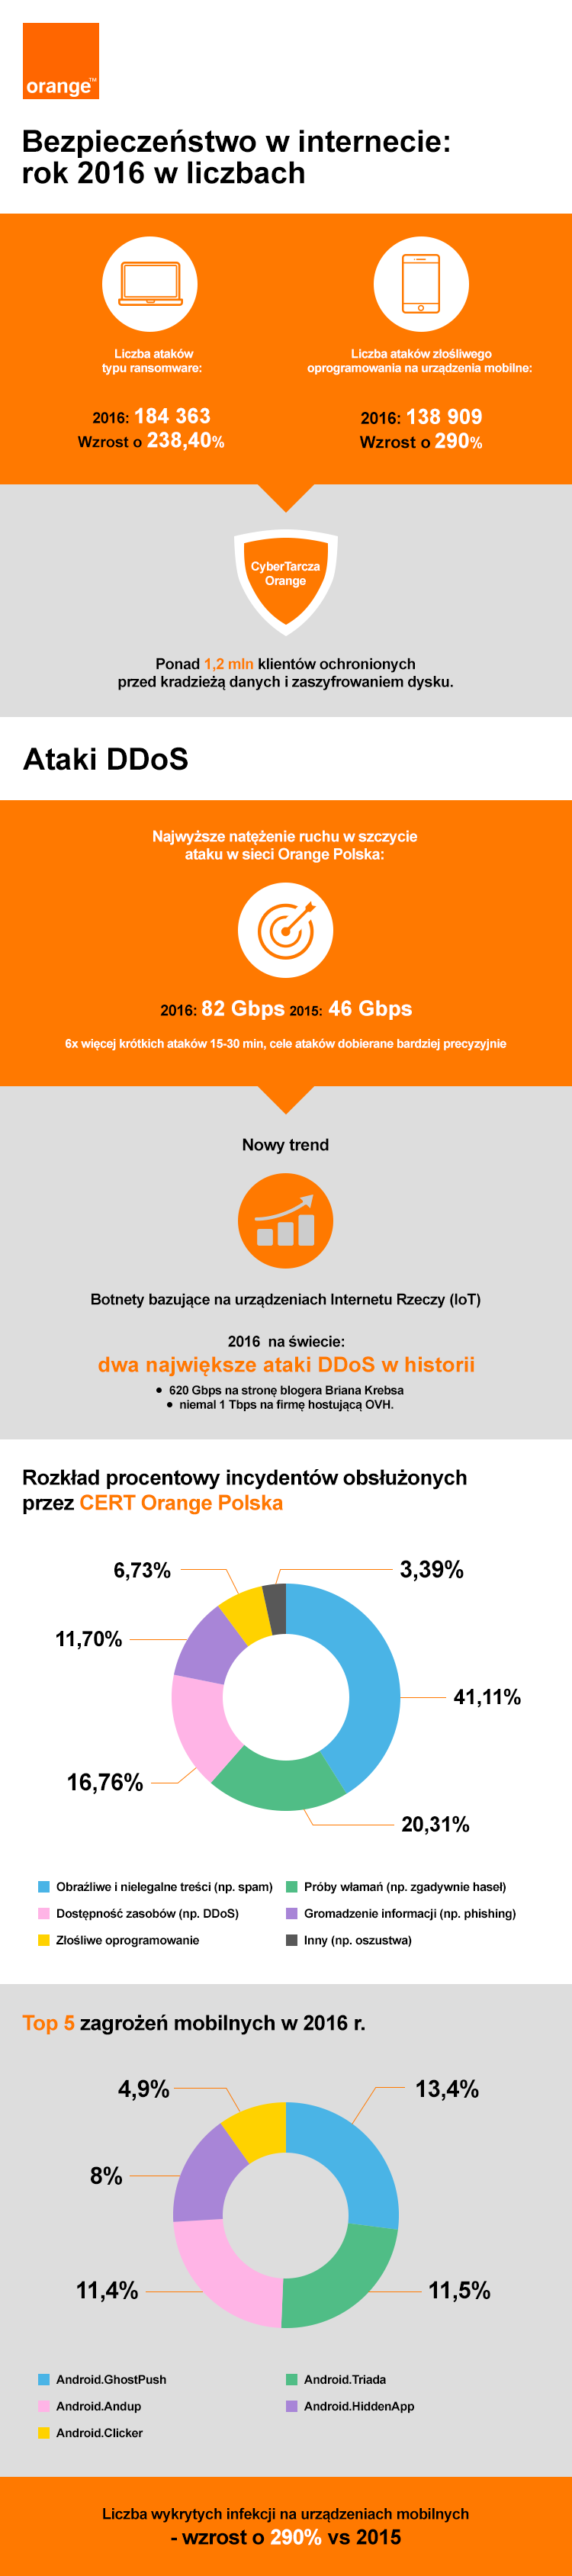 orange_blog_infografika_170313v5.png